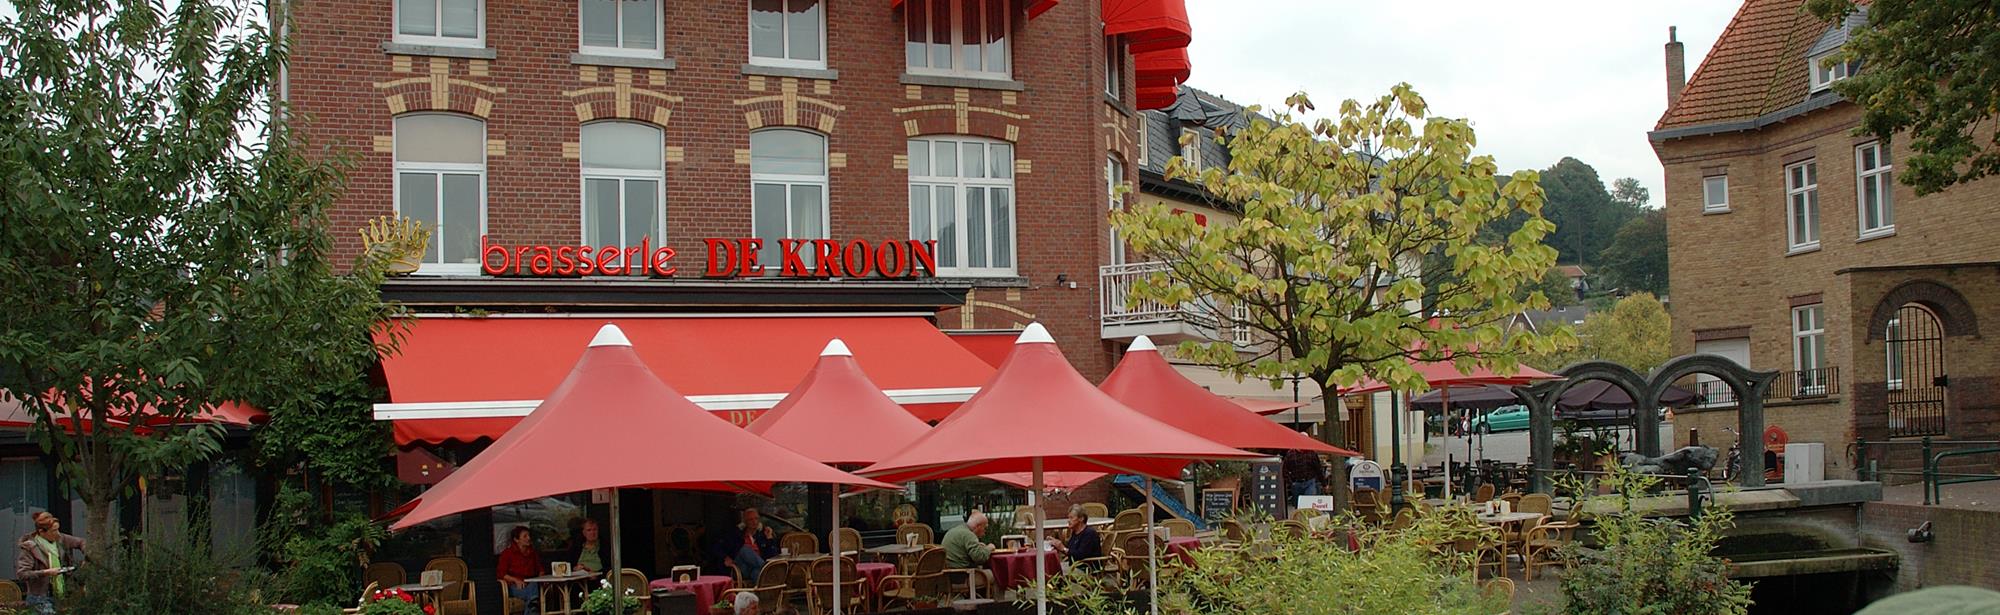 Brasserie De Kroon